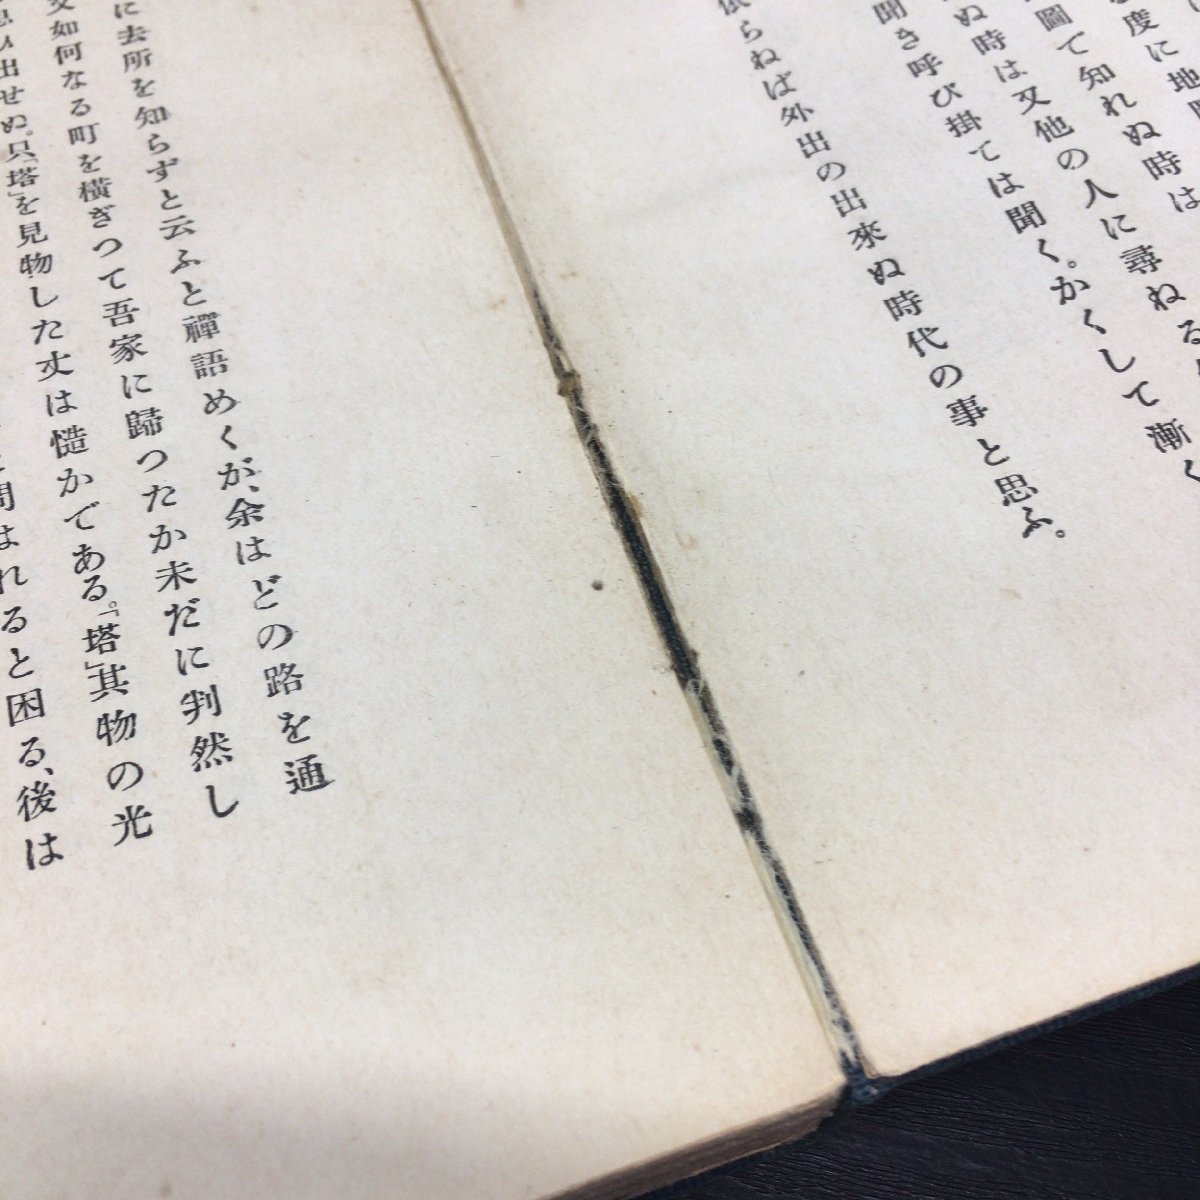 . нет [.. сборник Natsume Soseki Nakamura не .*... лист :..] большой . книжный магазин Meiji 40 год ( исправление 3 версия )